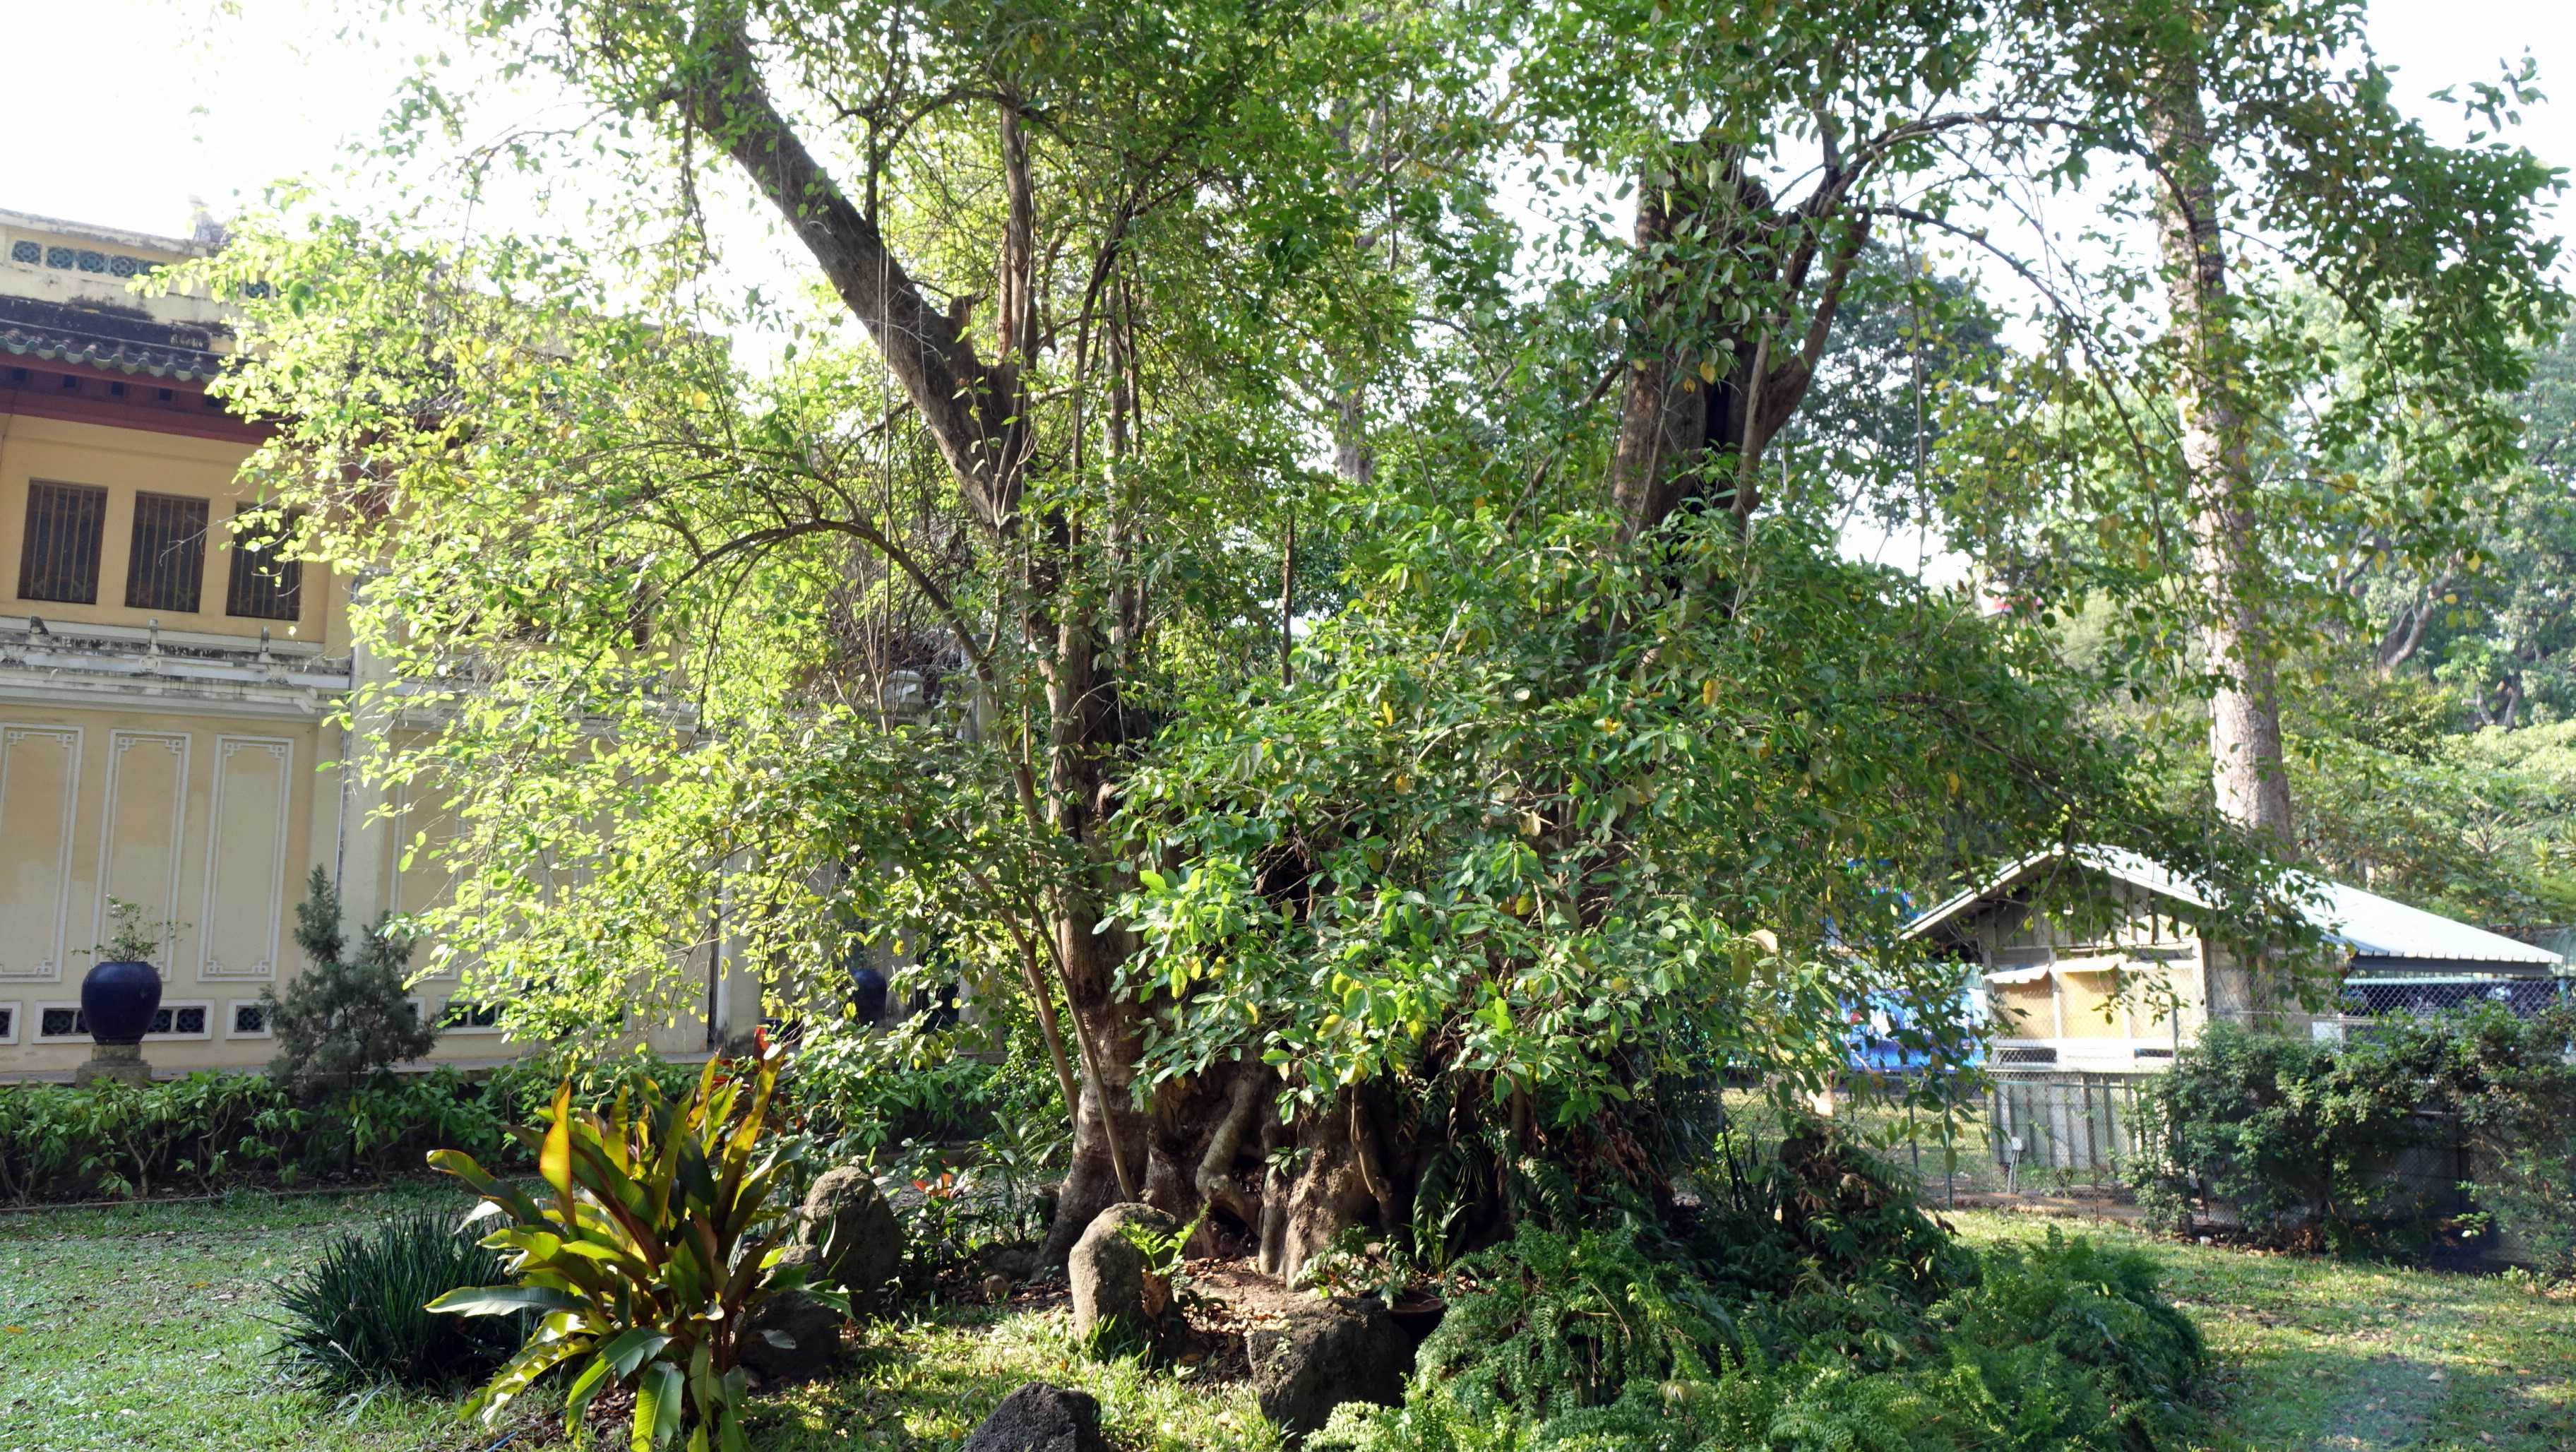 Thảo cầm viên có 1 cây mét mang mã số 693, có vị trí bên phải Bảo tàng lịch sử, có thể nói đây là cây cao tuổi nhất ở Thảo Cầm Viên Sài Gòn, tuổi thọ có thể đến 250 năm, đường kính gốc đến 2,45 m. Theo tài liệu thì cây này từ năm 1919 đường kính thân đã rất to và bắt đầu tái sinh chồi